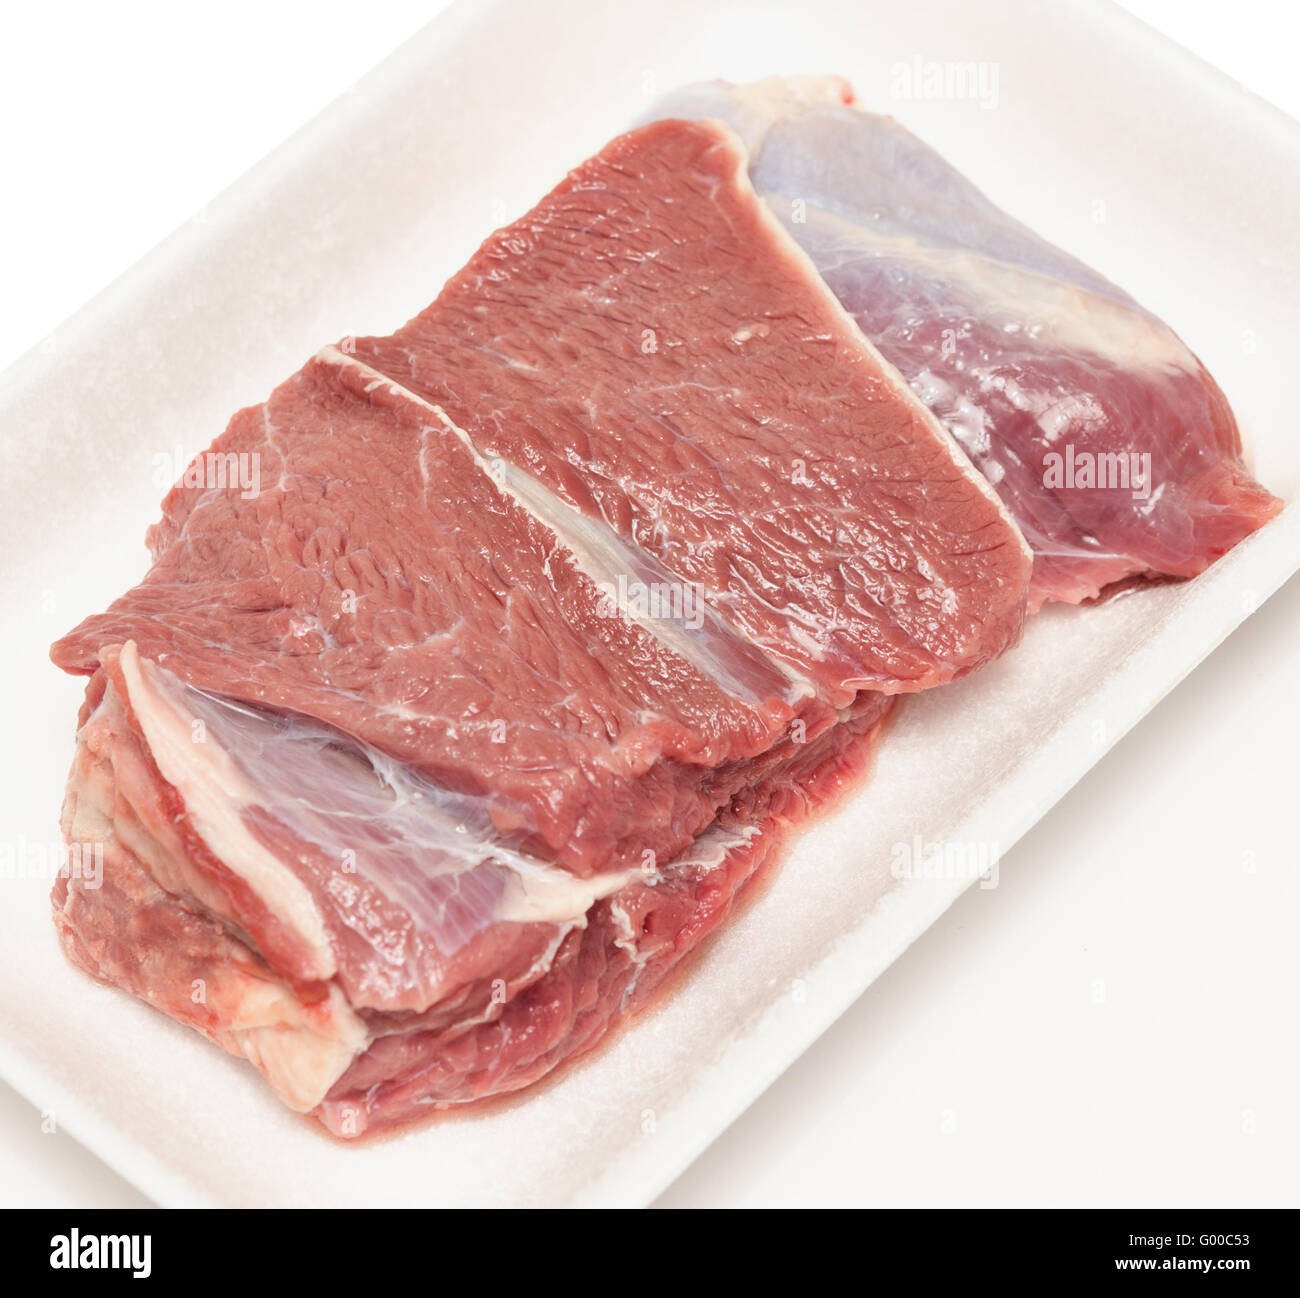 Raw Beaf Meat Stock Photo Alamy